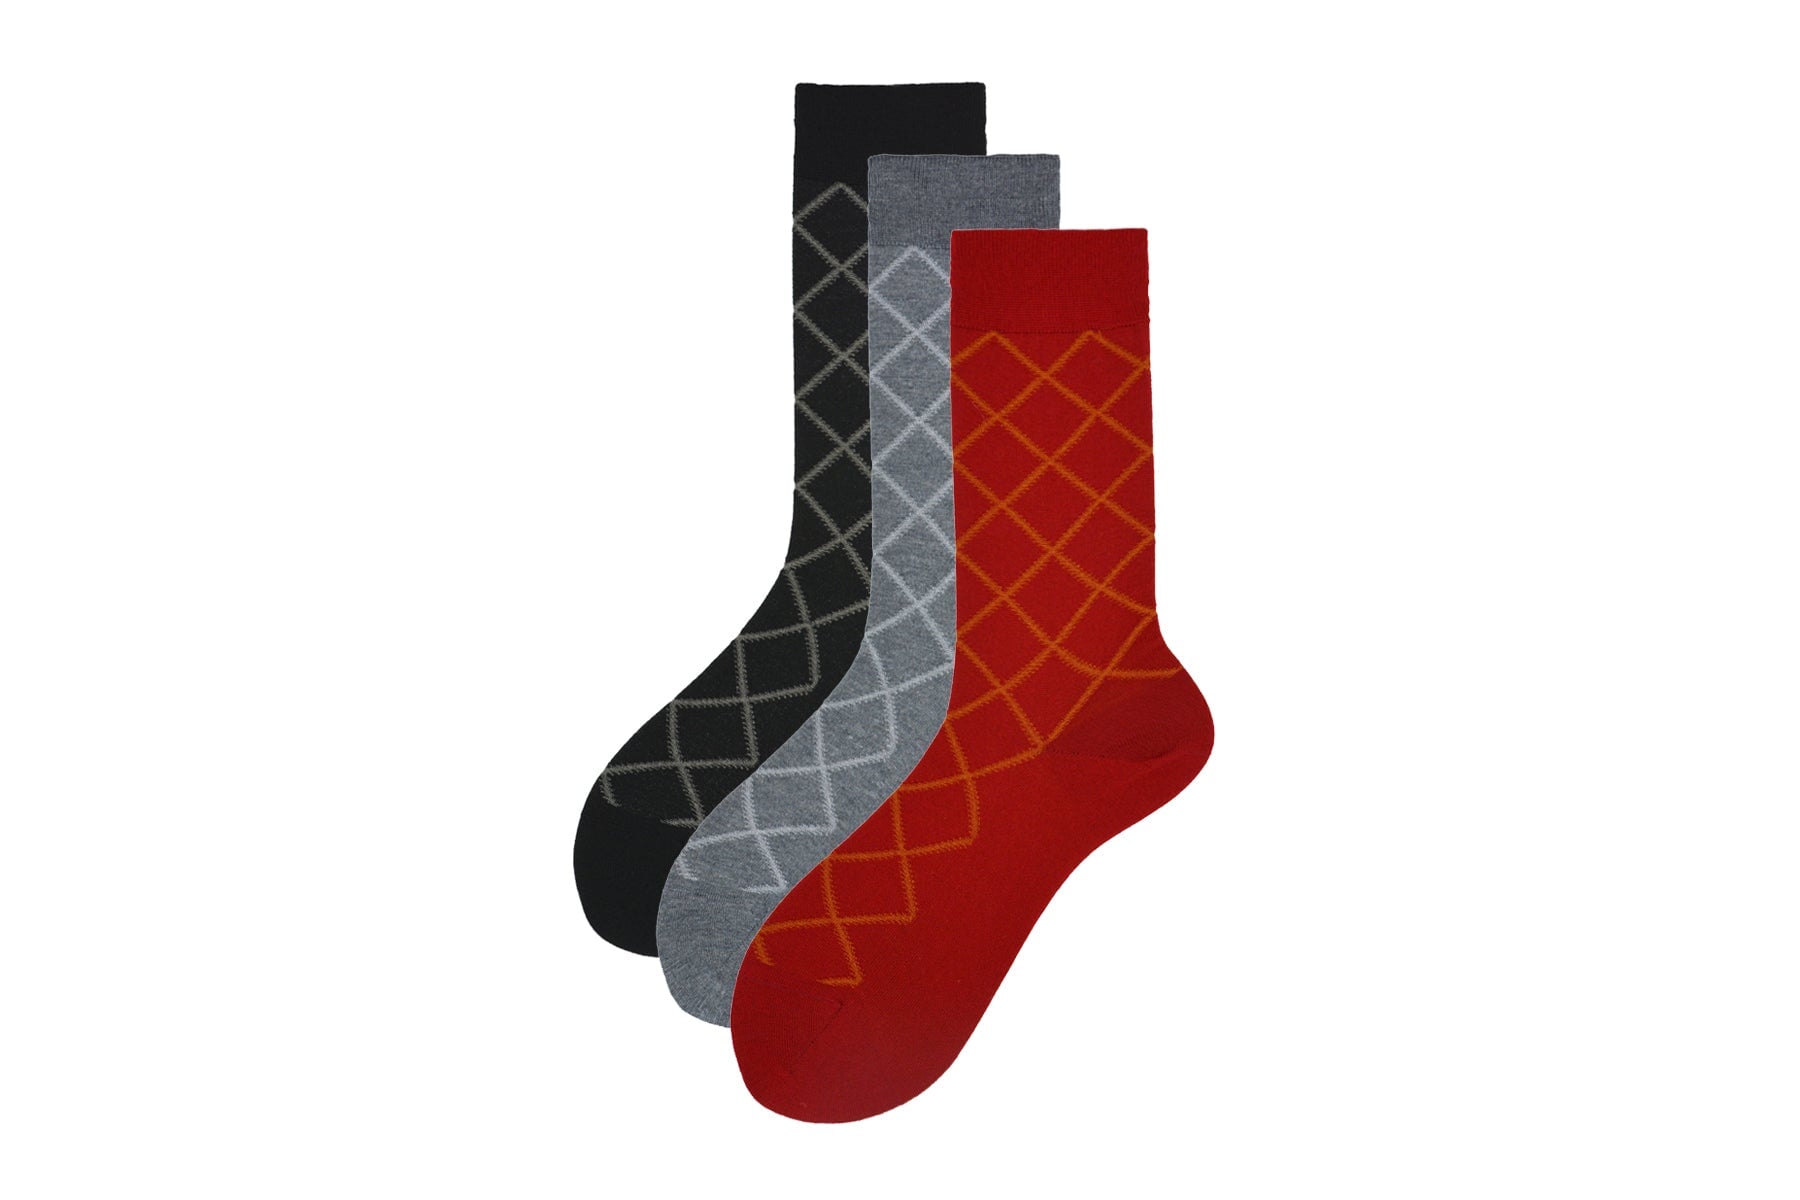 Herren Socken aus Merino Wolle in Rot- Chelsea Herren Socken Alto Milano 